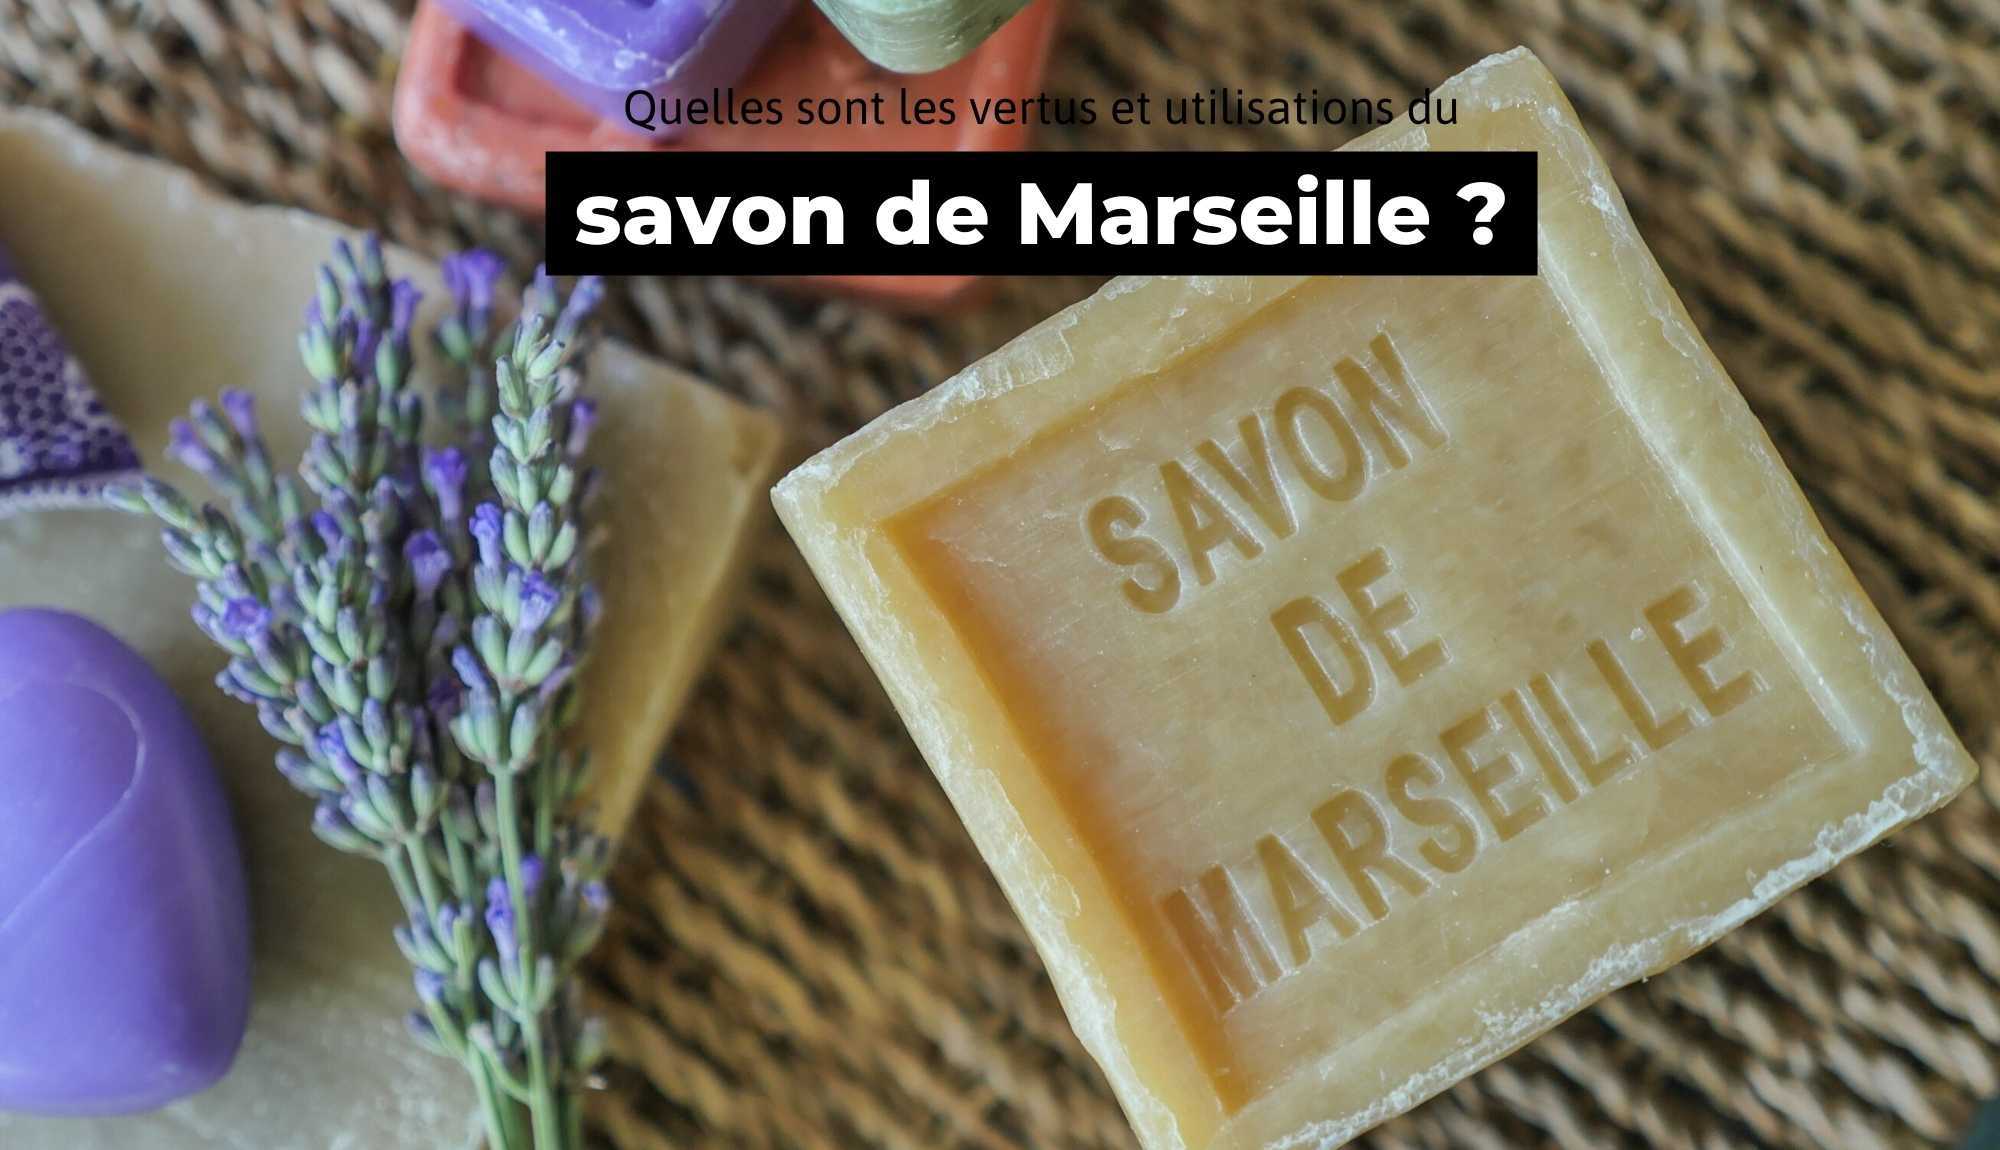 Lessive aux copeaux de savon de Marseille et bicarbonate 5L